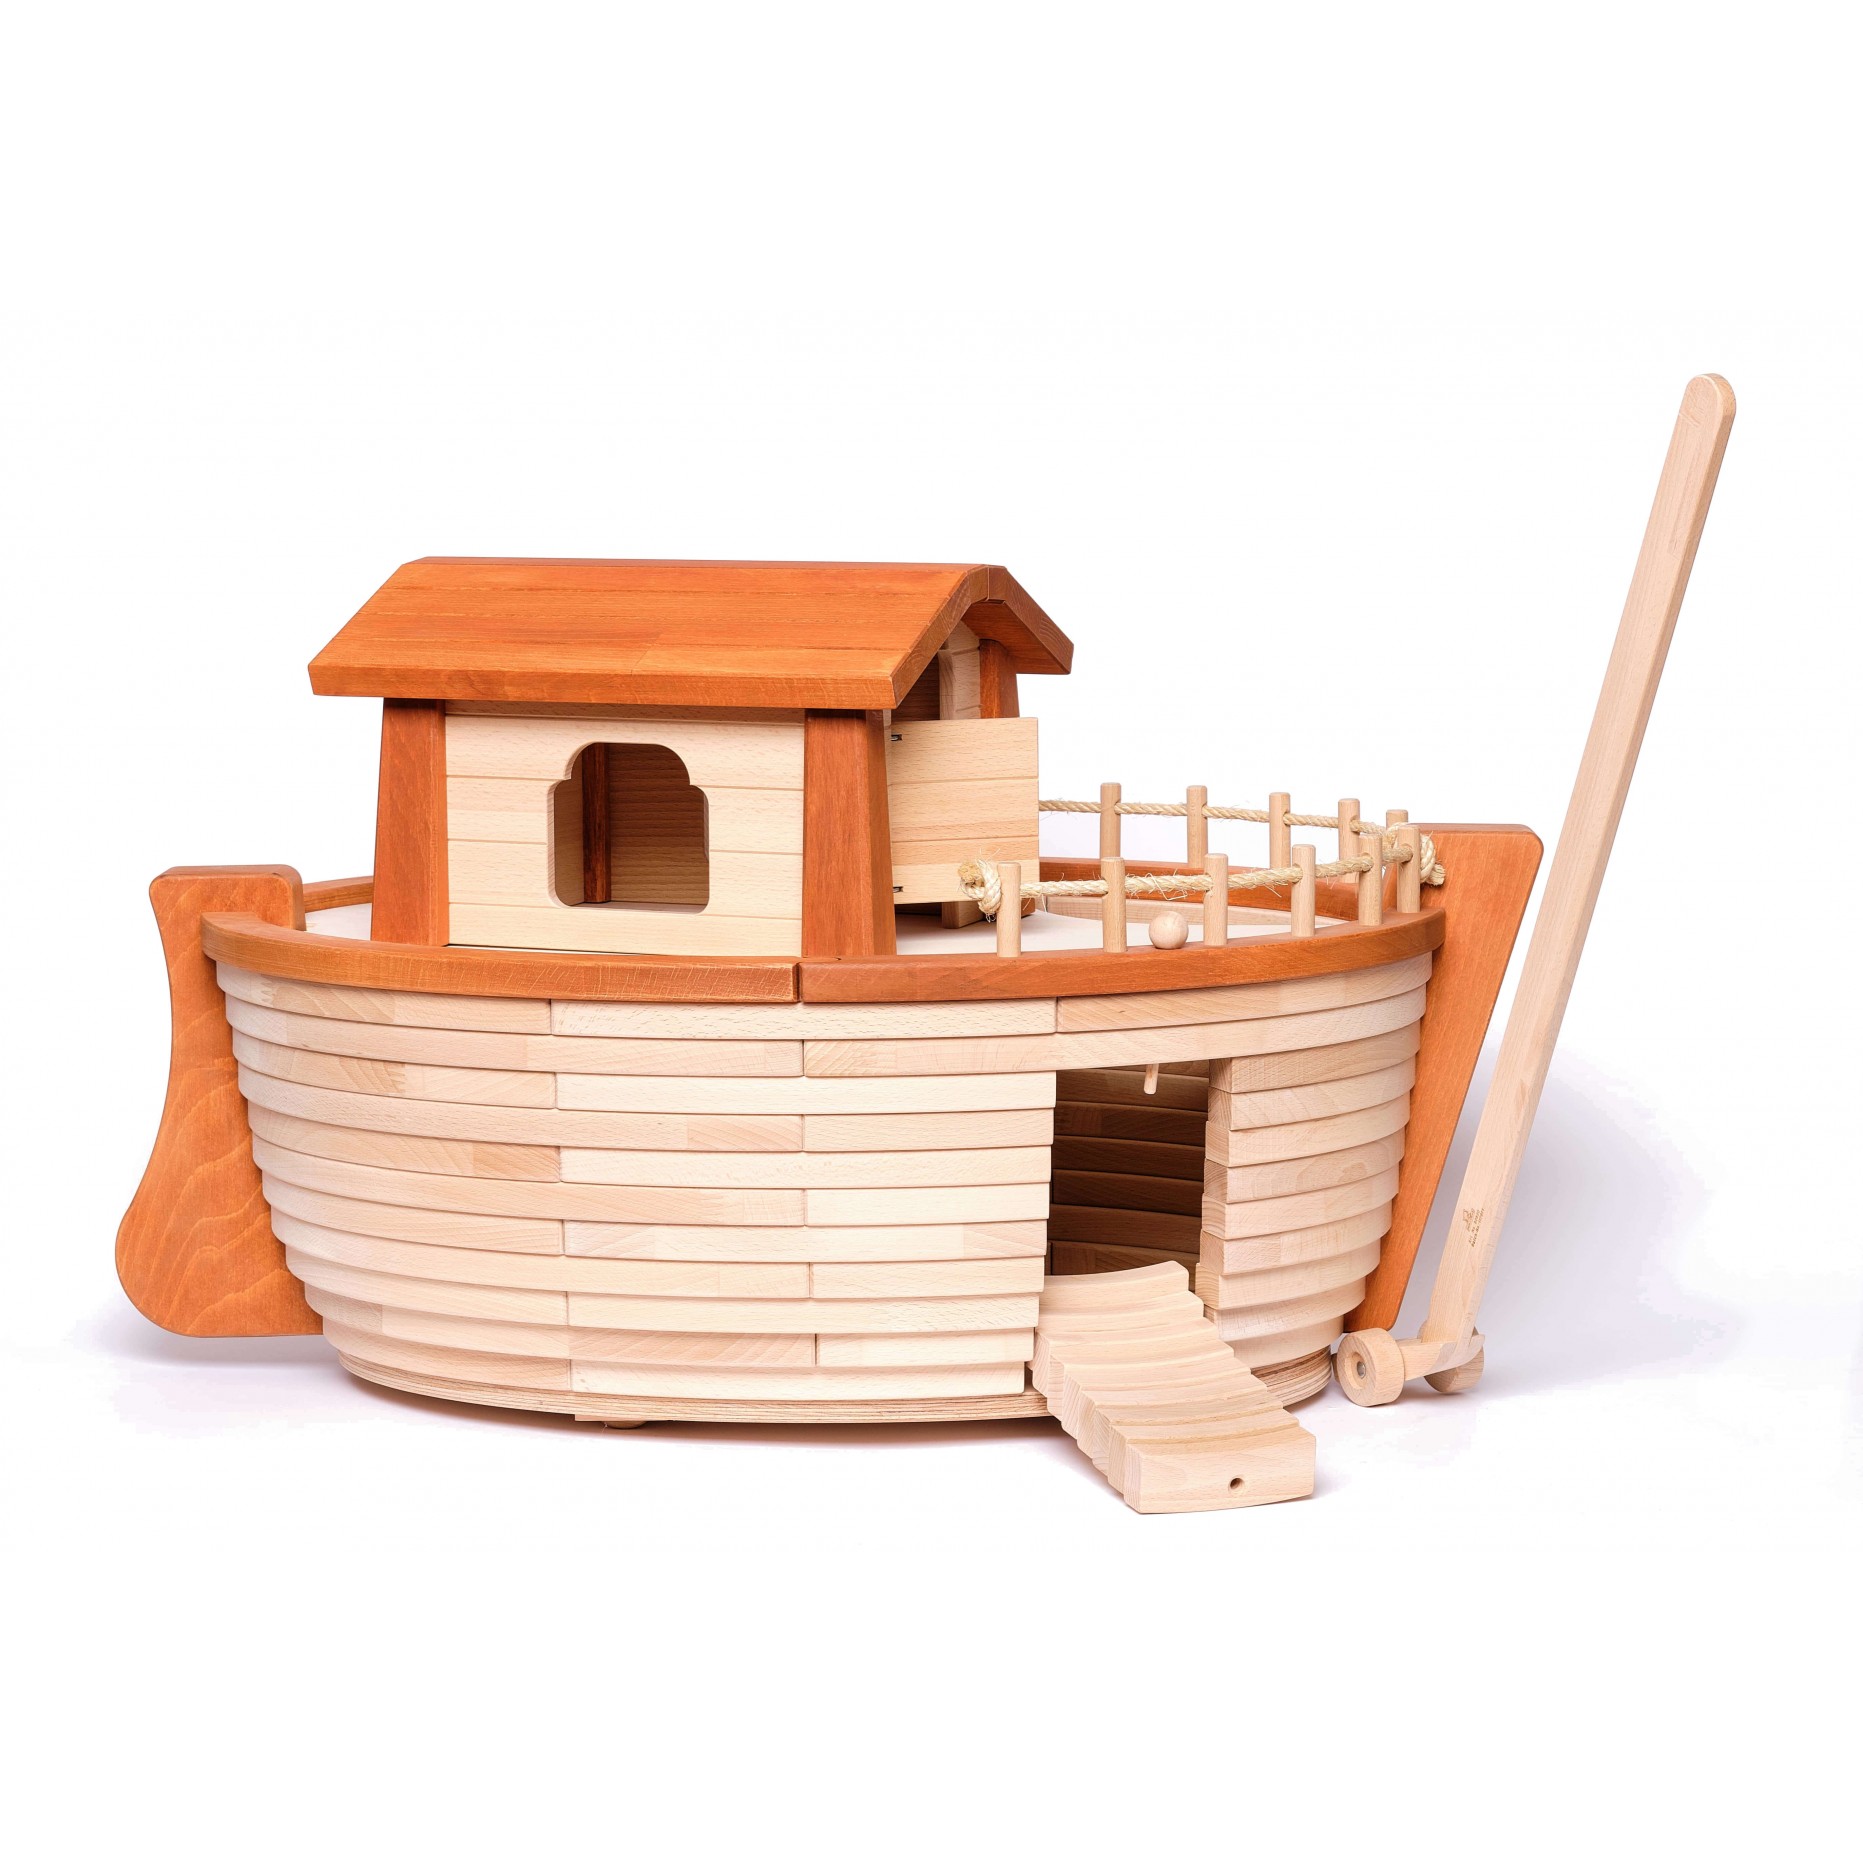 Fdit Jouet Arche de Noé L'arche de Noé jouets en bois mignon forme